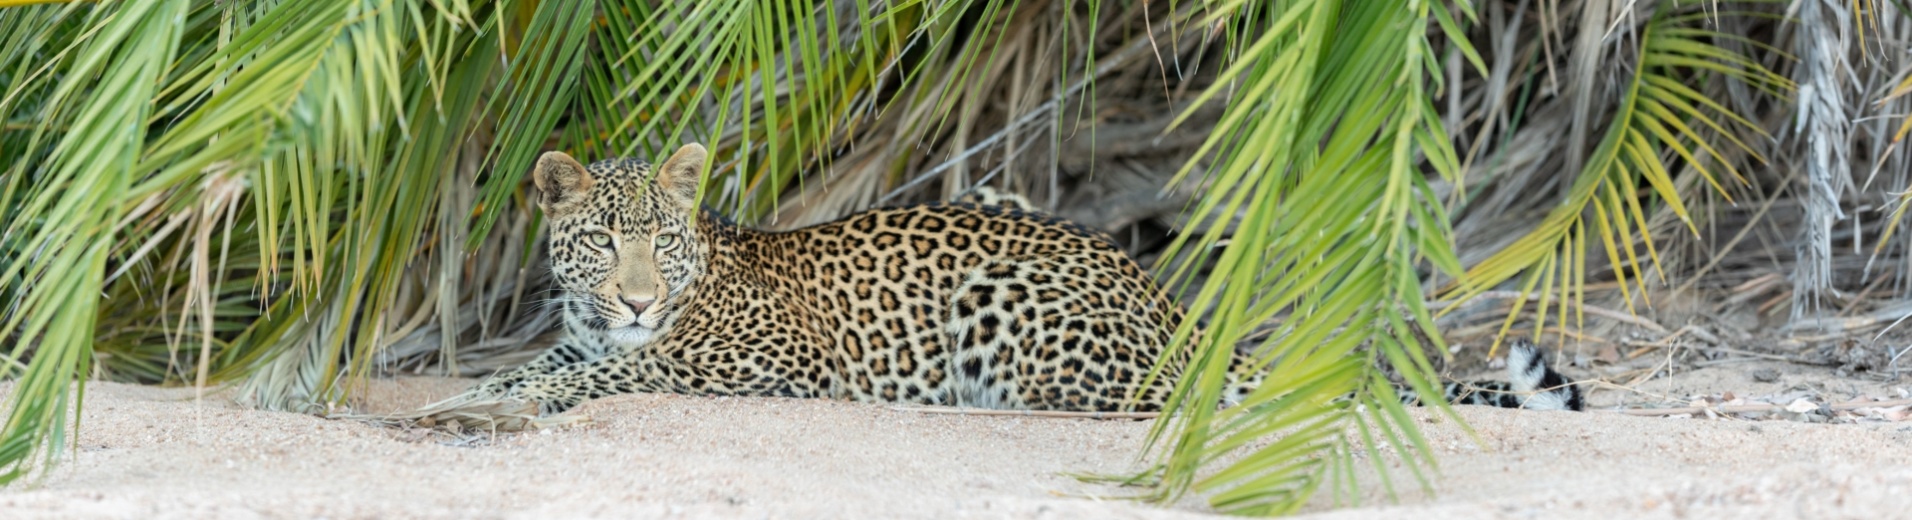 léopard-allongé-sable-palmier